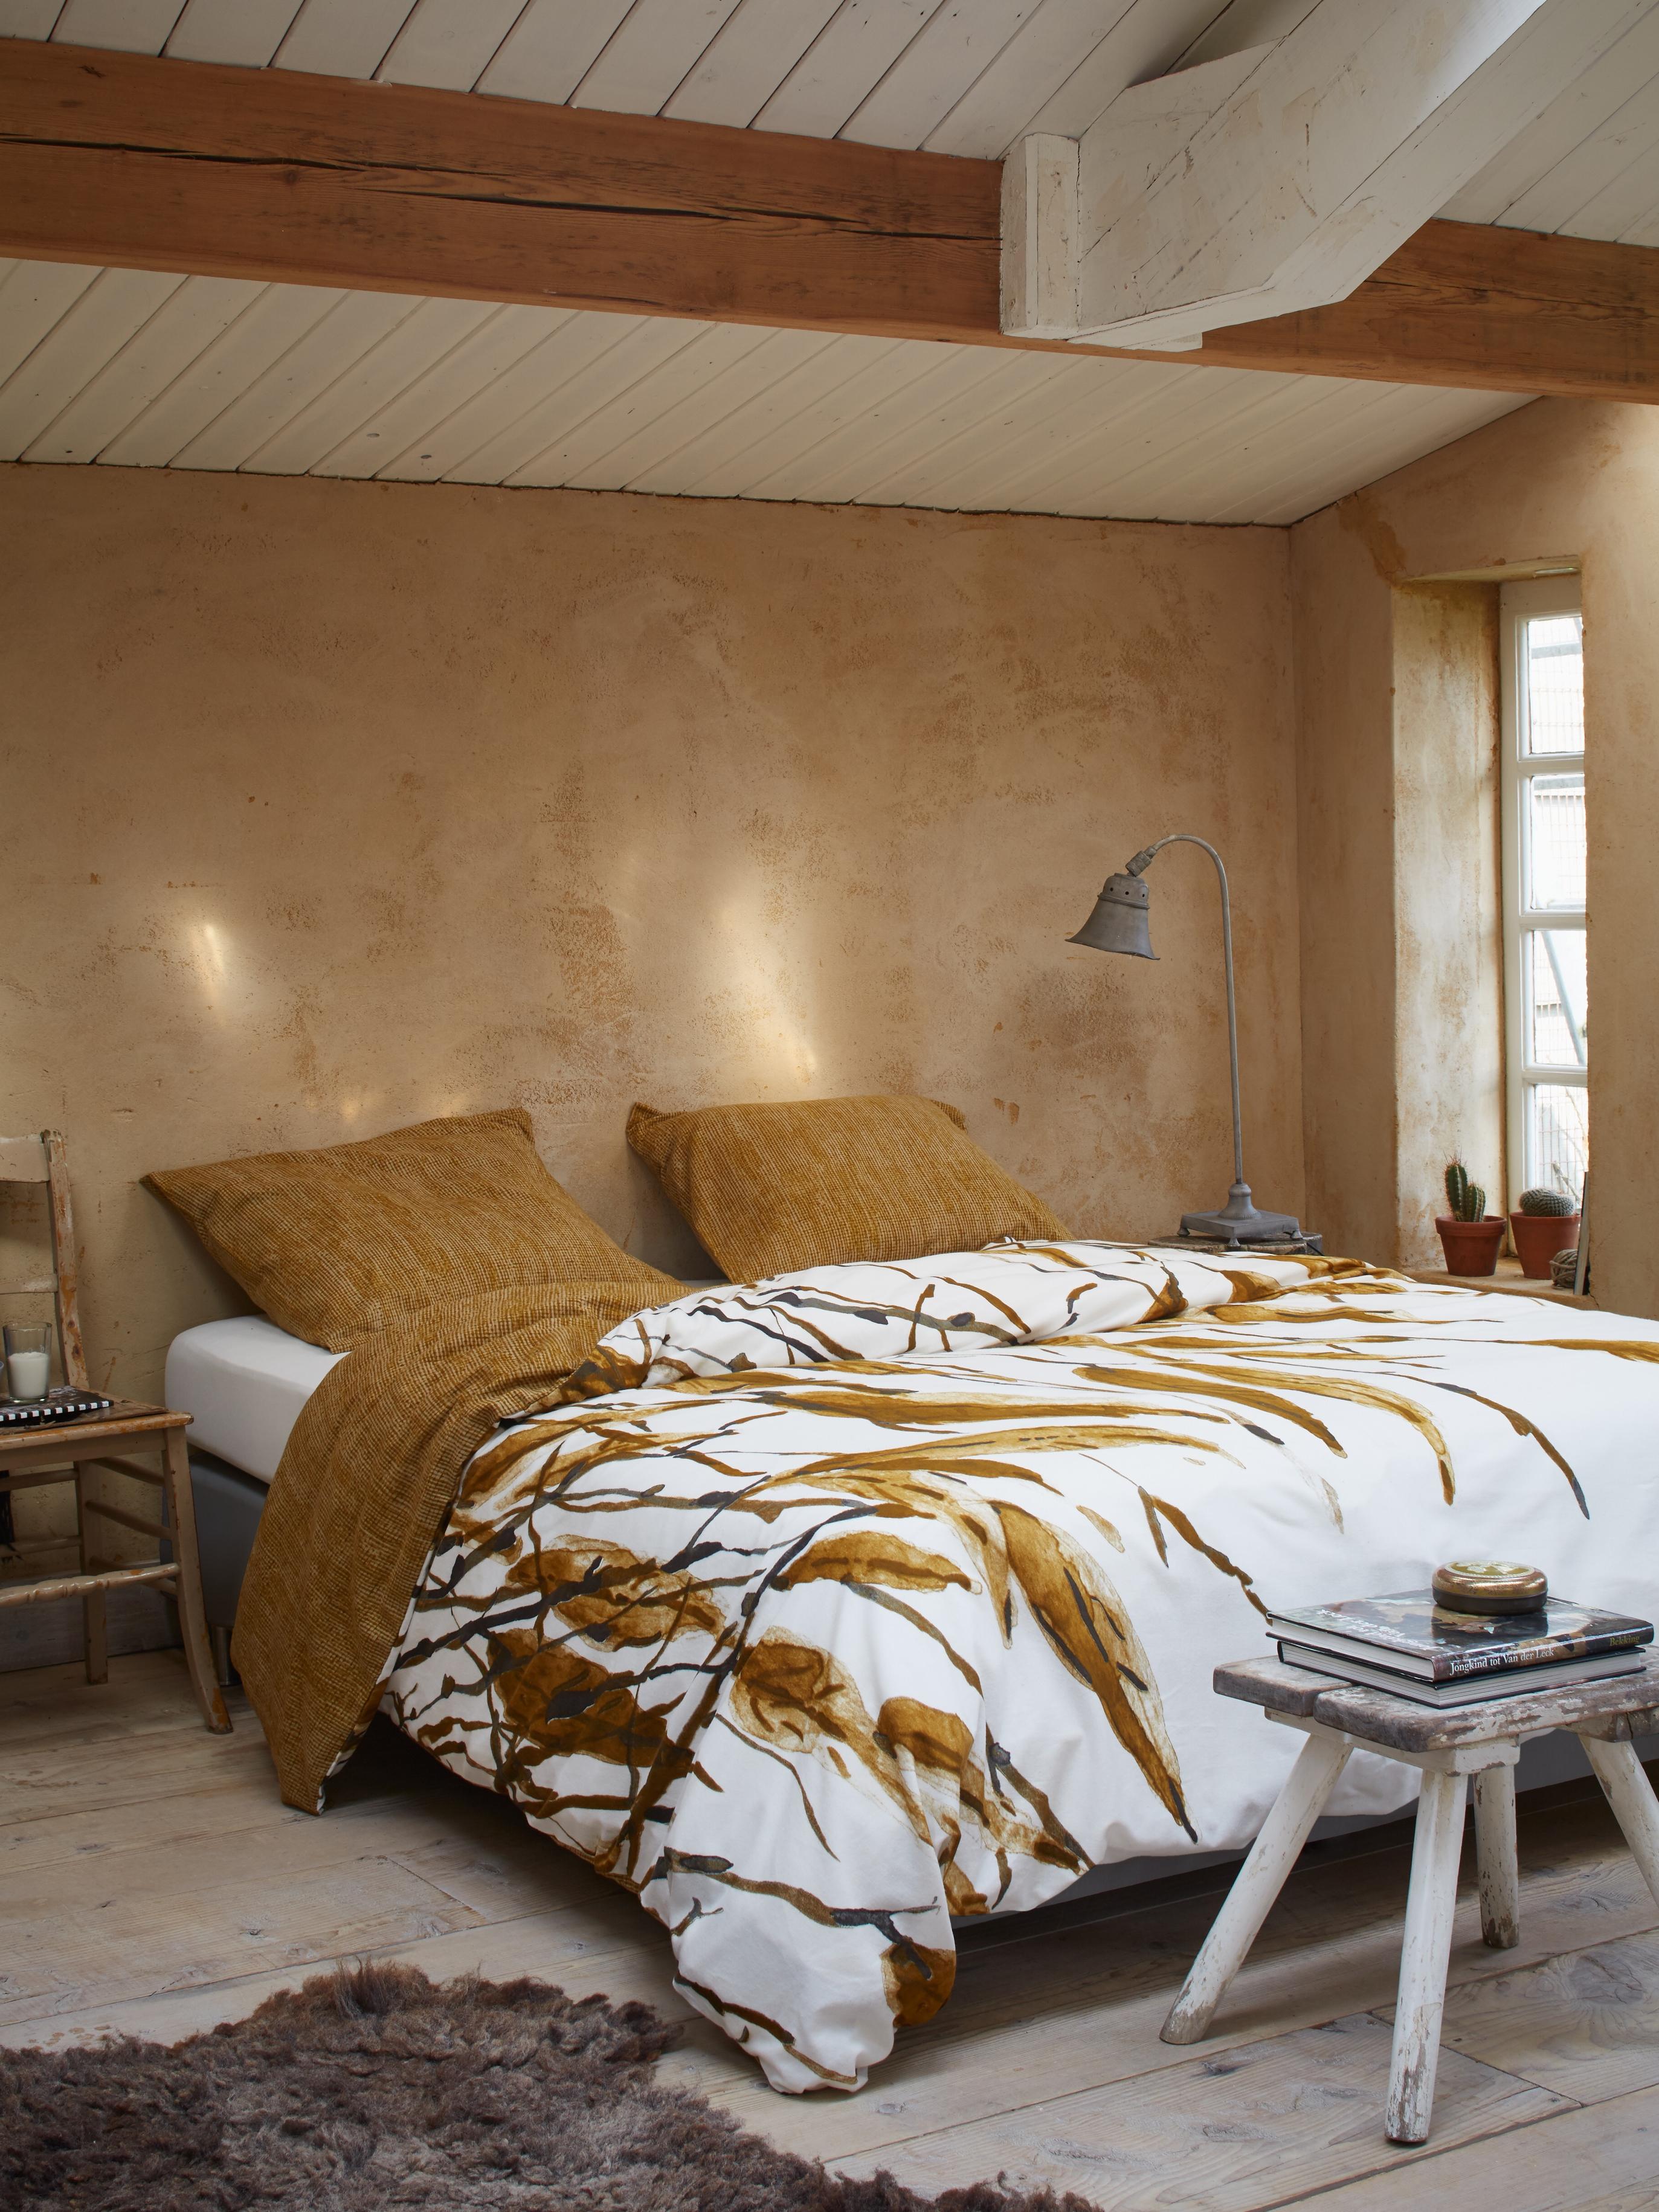 Schlafzimmer im Landhausstil einrichten #bett #bettwäsche #landhausstil #zimmergestaltung ©Essenza Home/Vanezza